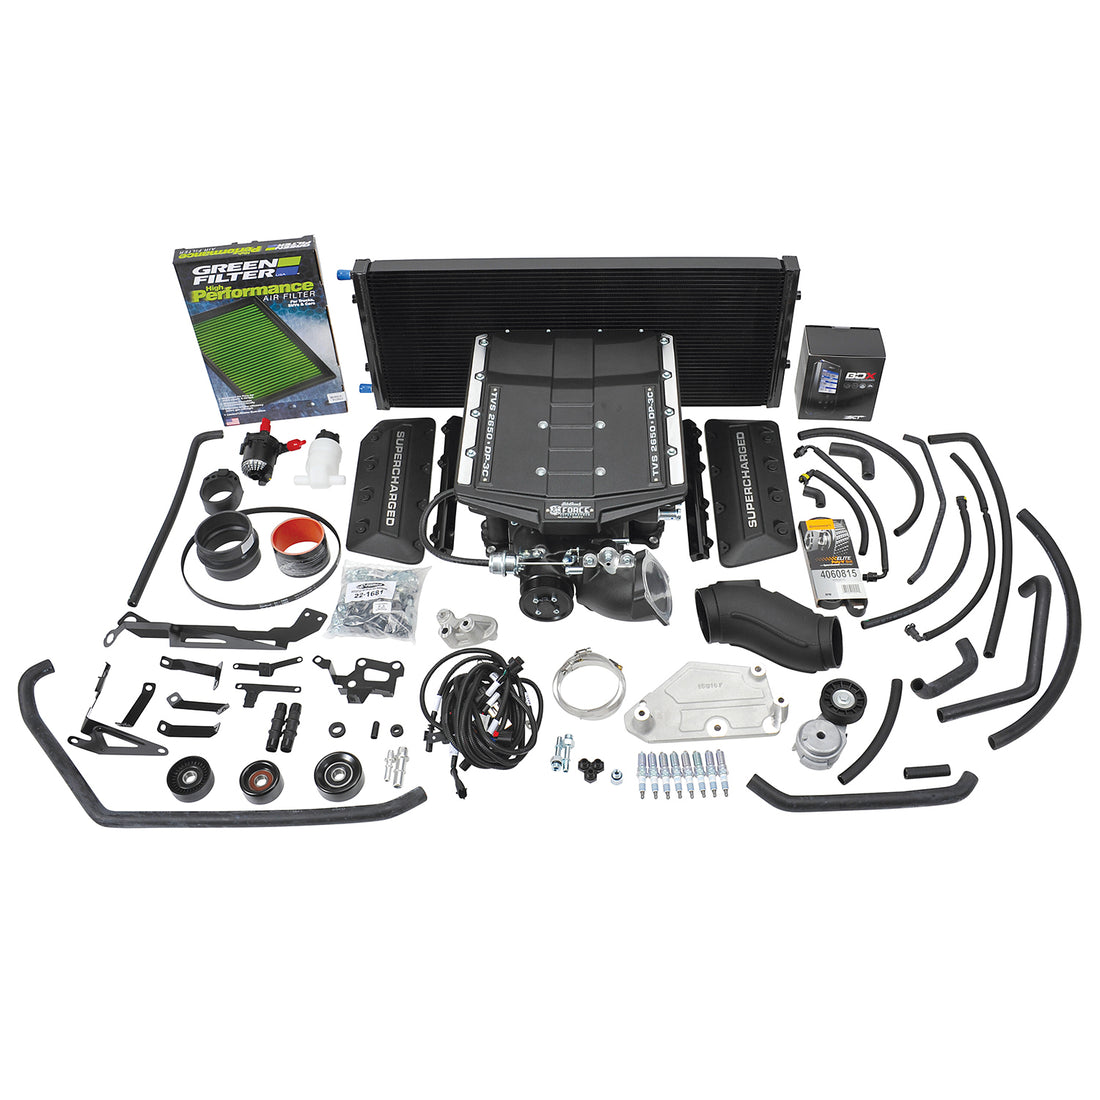 Edelbrock Stage 1 Supercharger Kit #15812 For 2019-21 Ford F-150 5.0L 4V W/ Tune Edelbrock